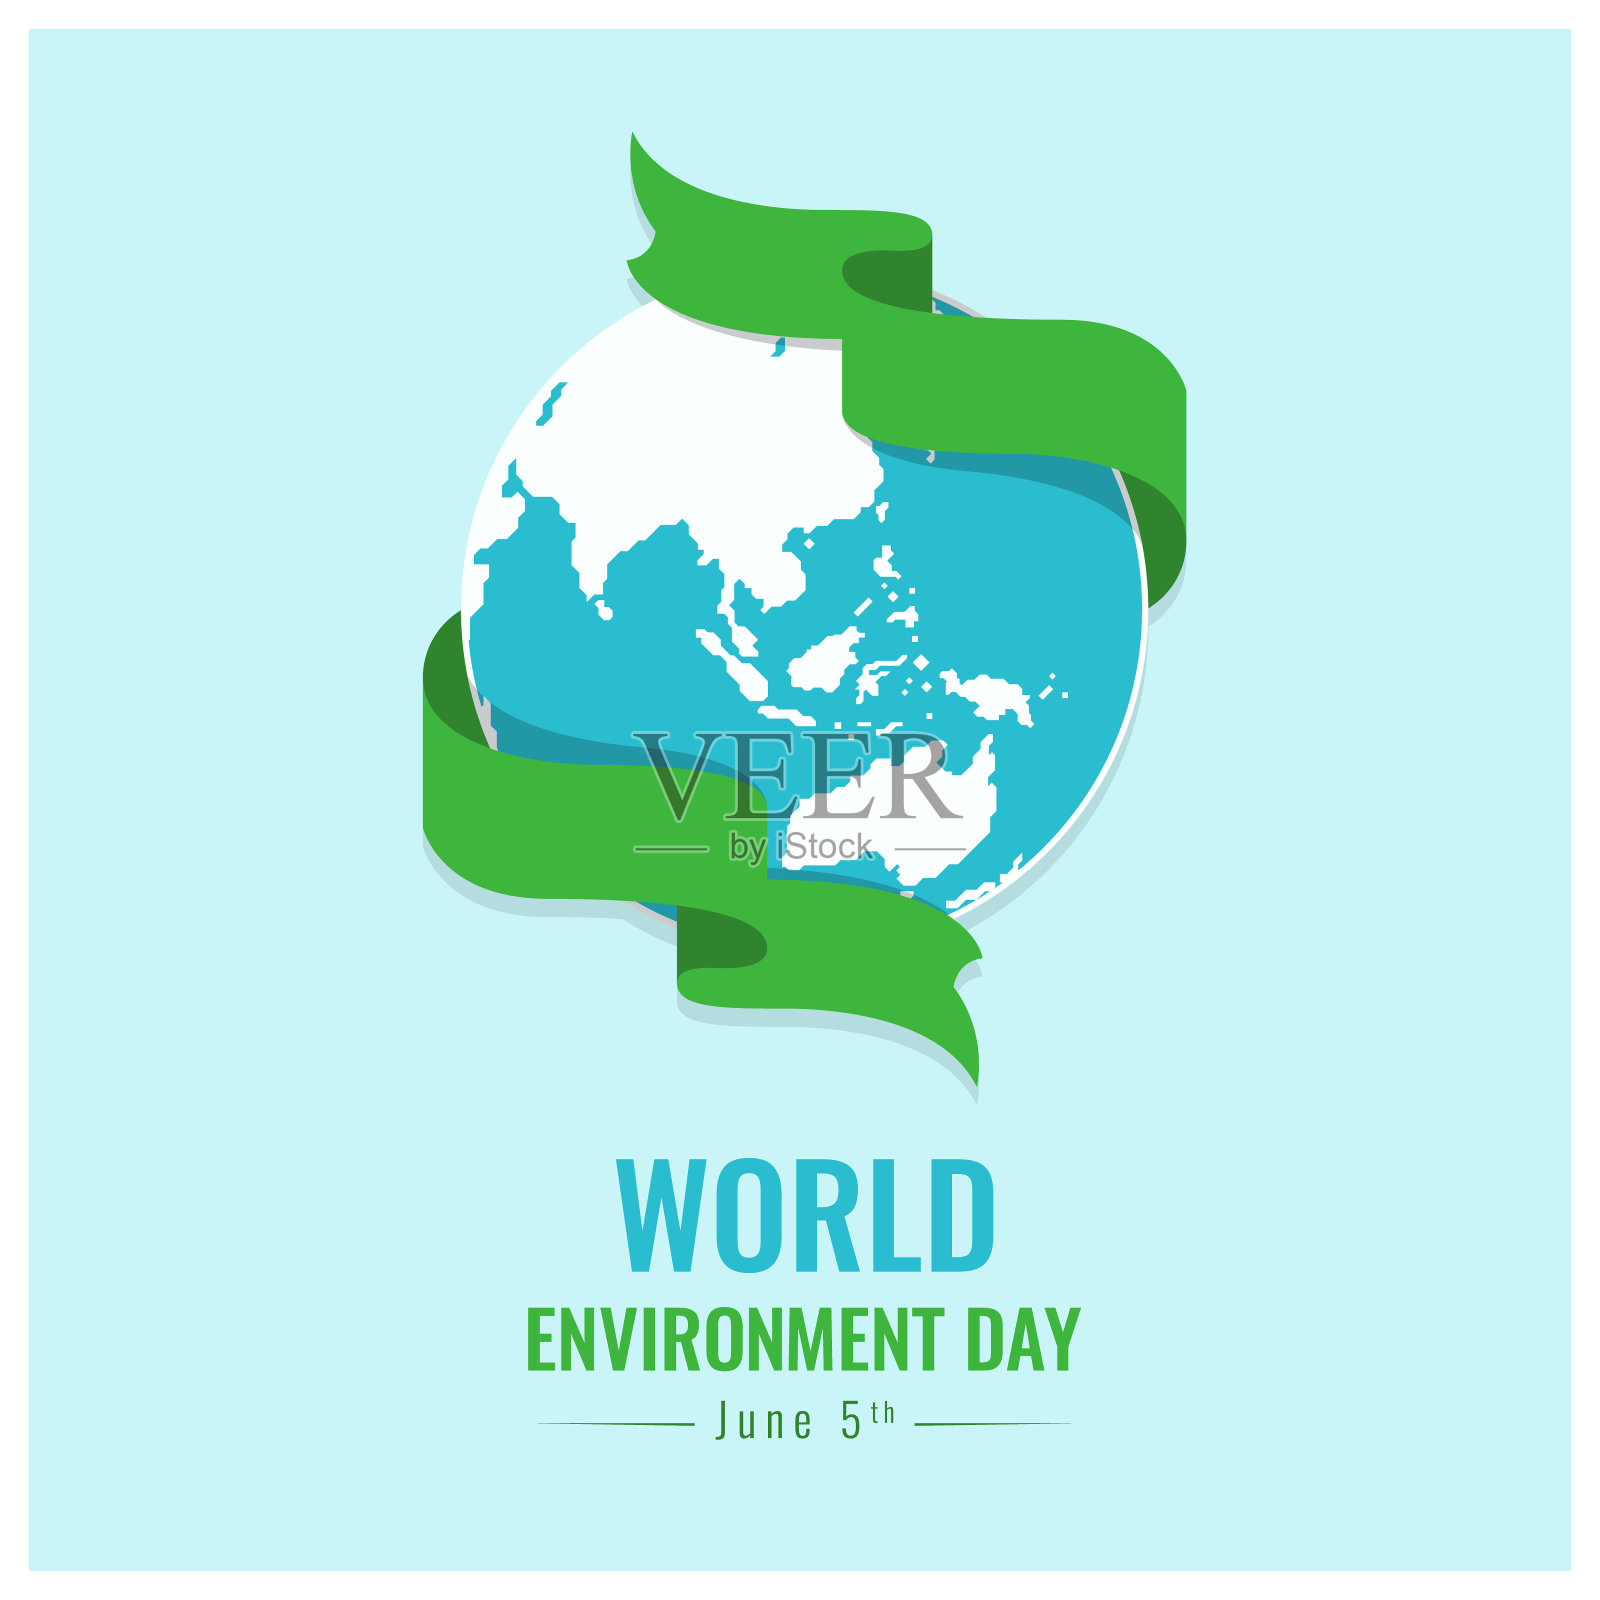 世界环境日横幅用绿色丝带环绕地球世界标志矢量设计插画图片素材